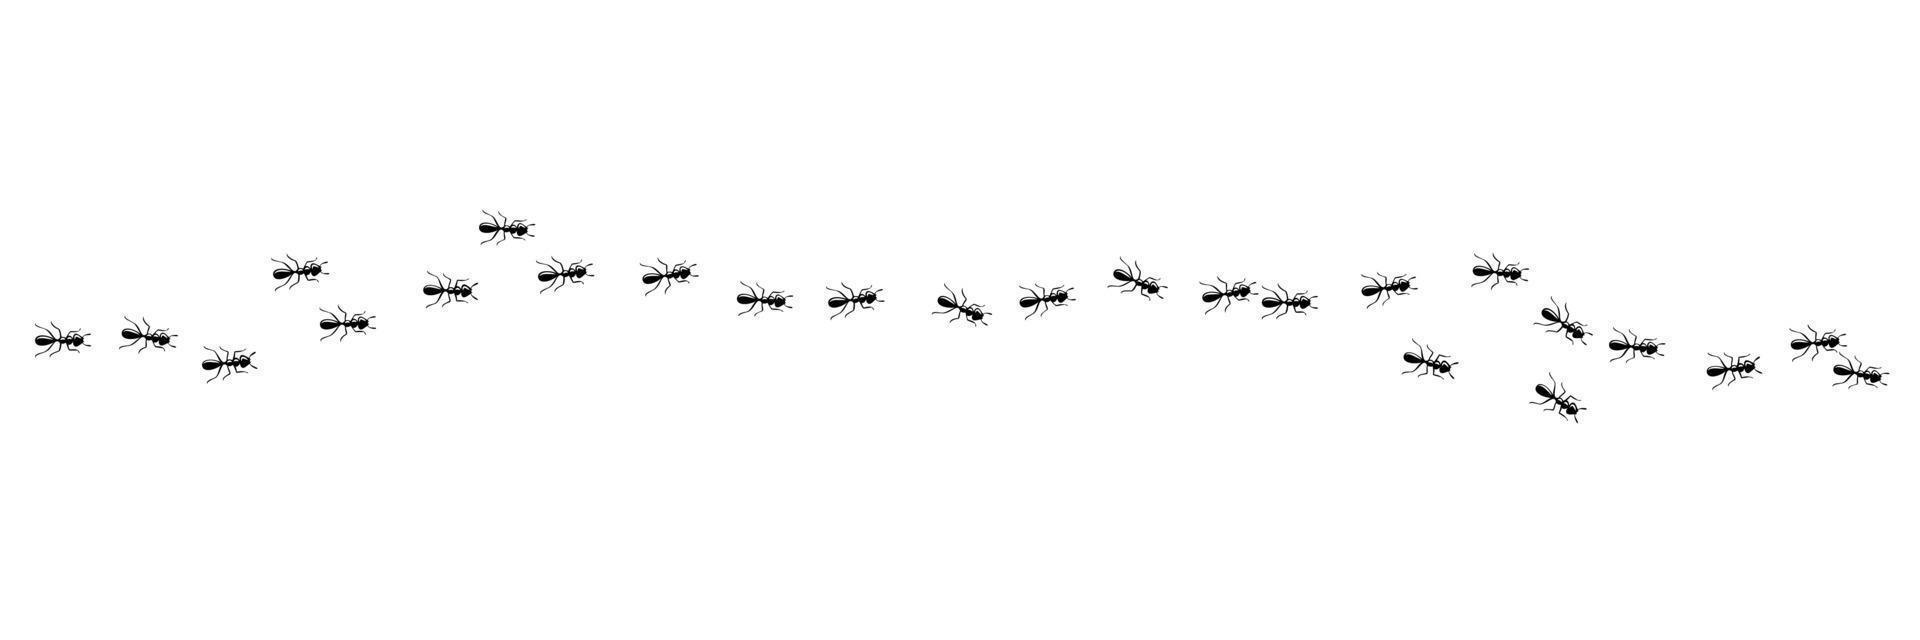 colonie de fourmis marchant dans le sentier. chemin de fourmi isolé sur fond blanc. illustration vectorielle vecteur